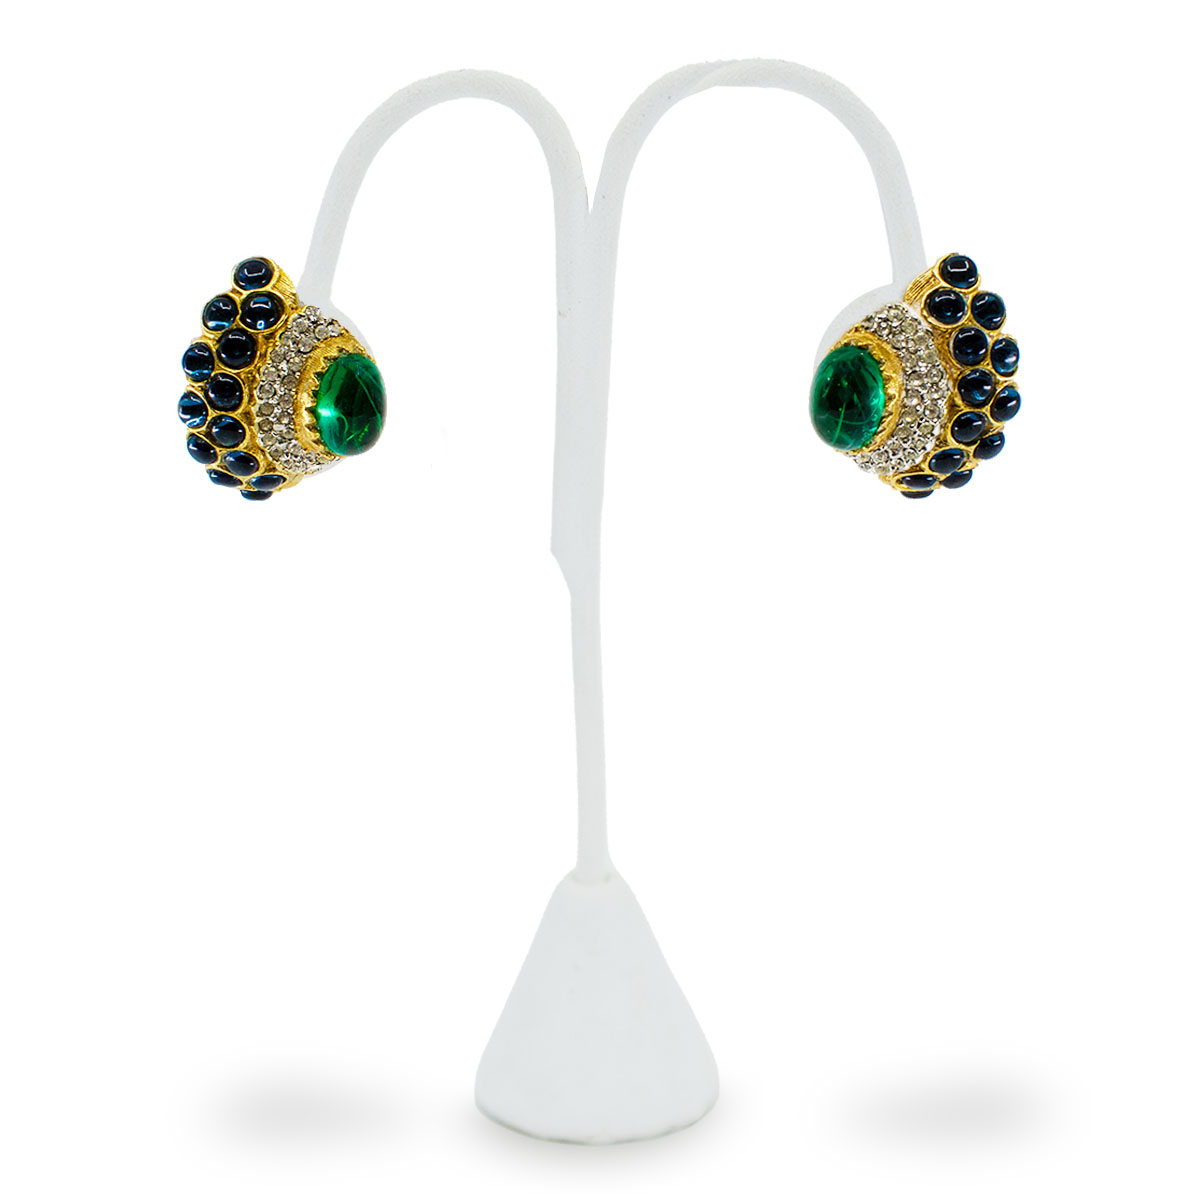 KJL jeweled earrings